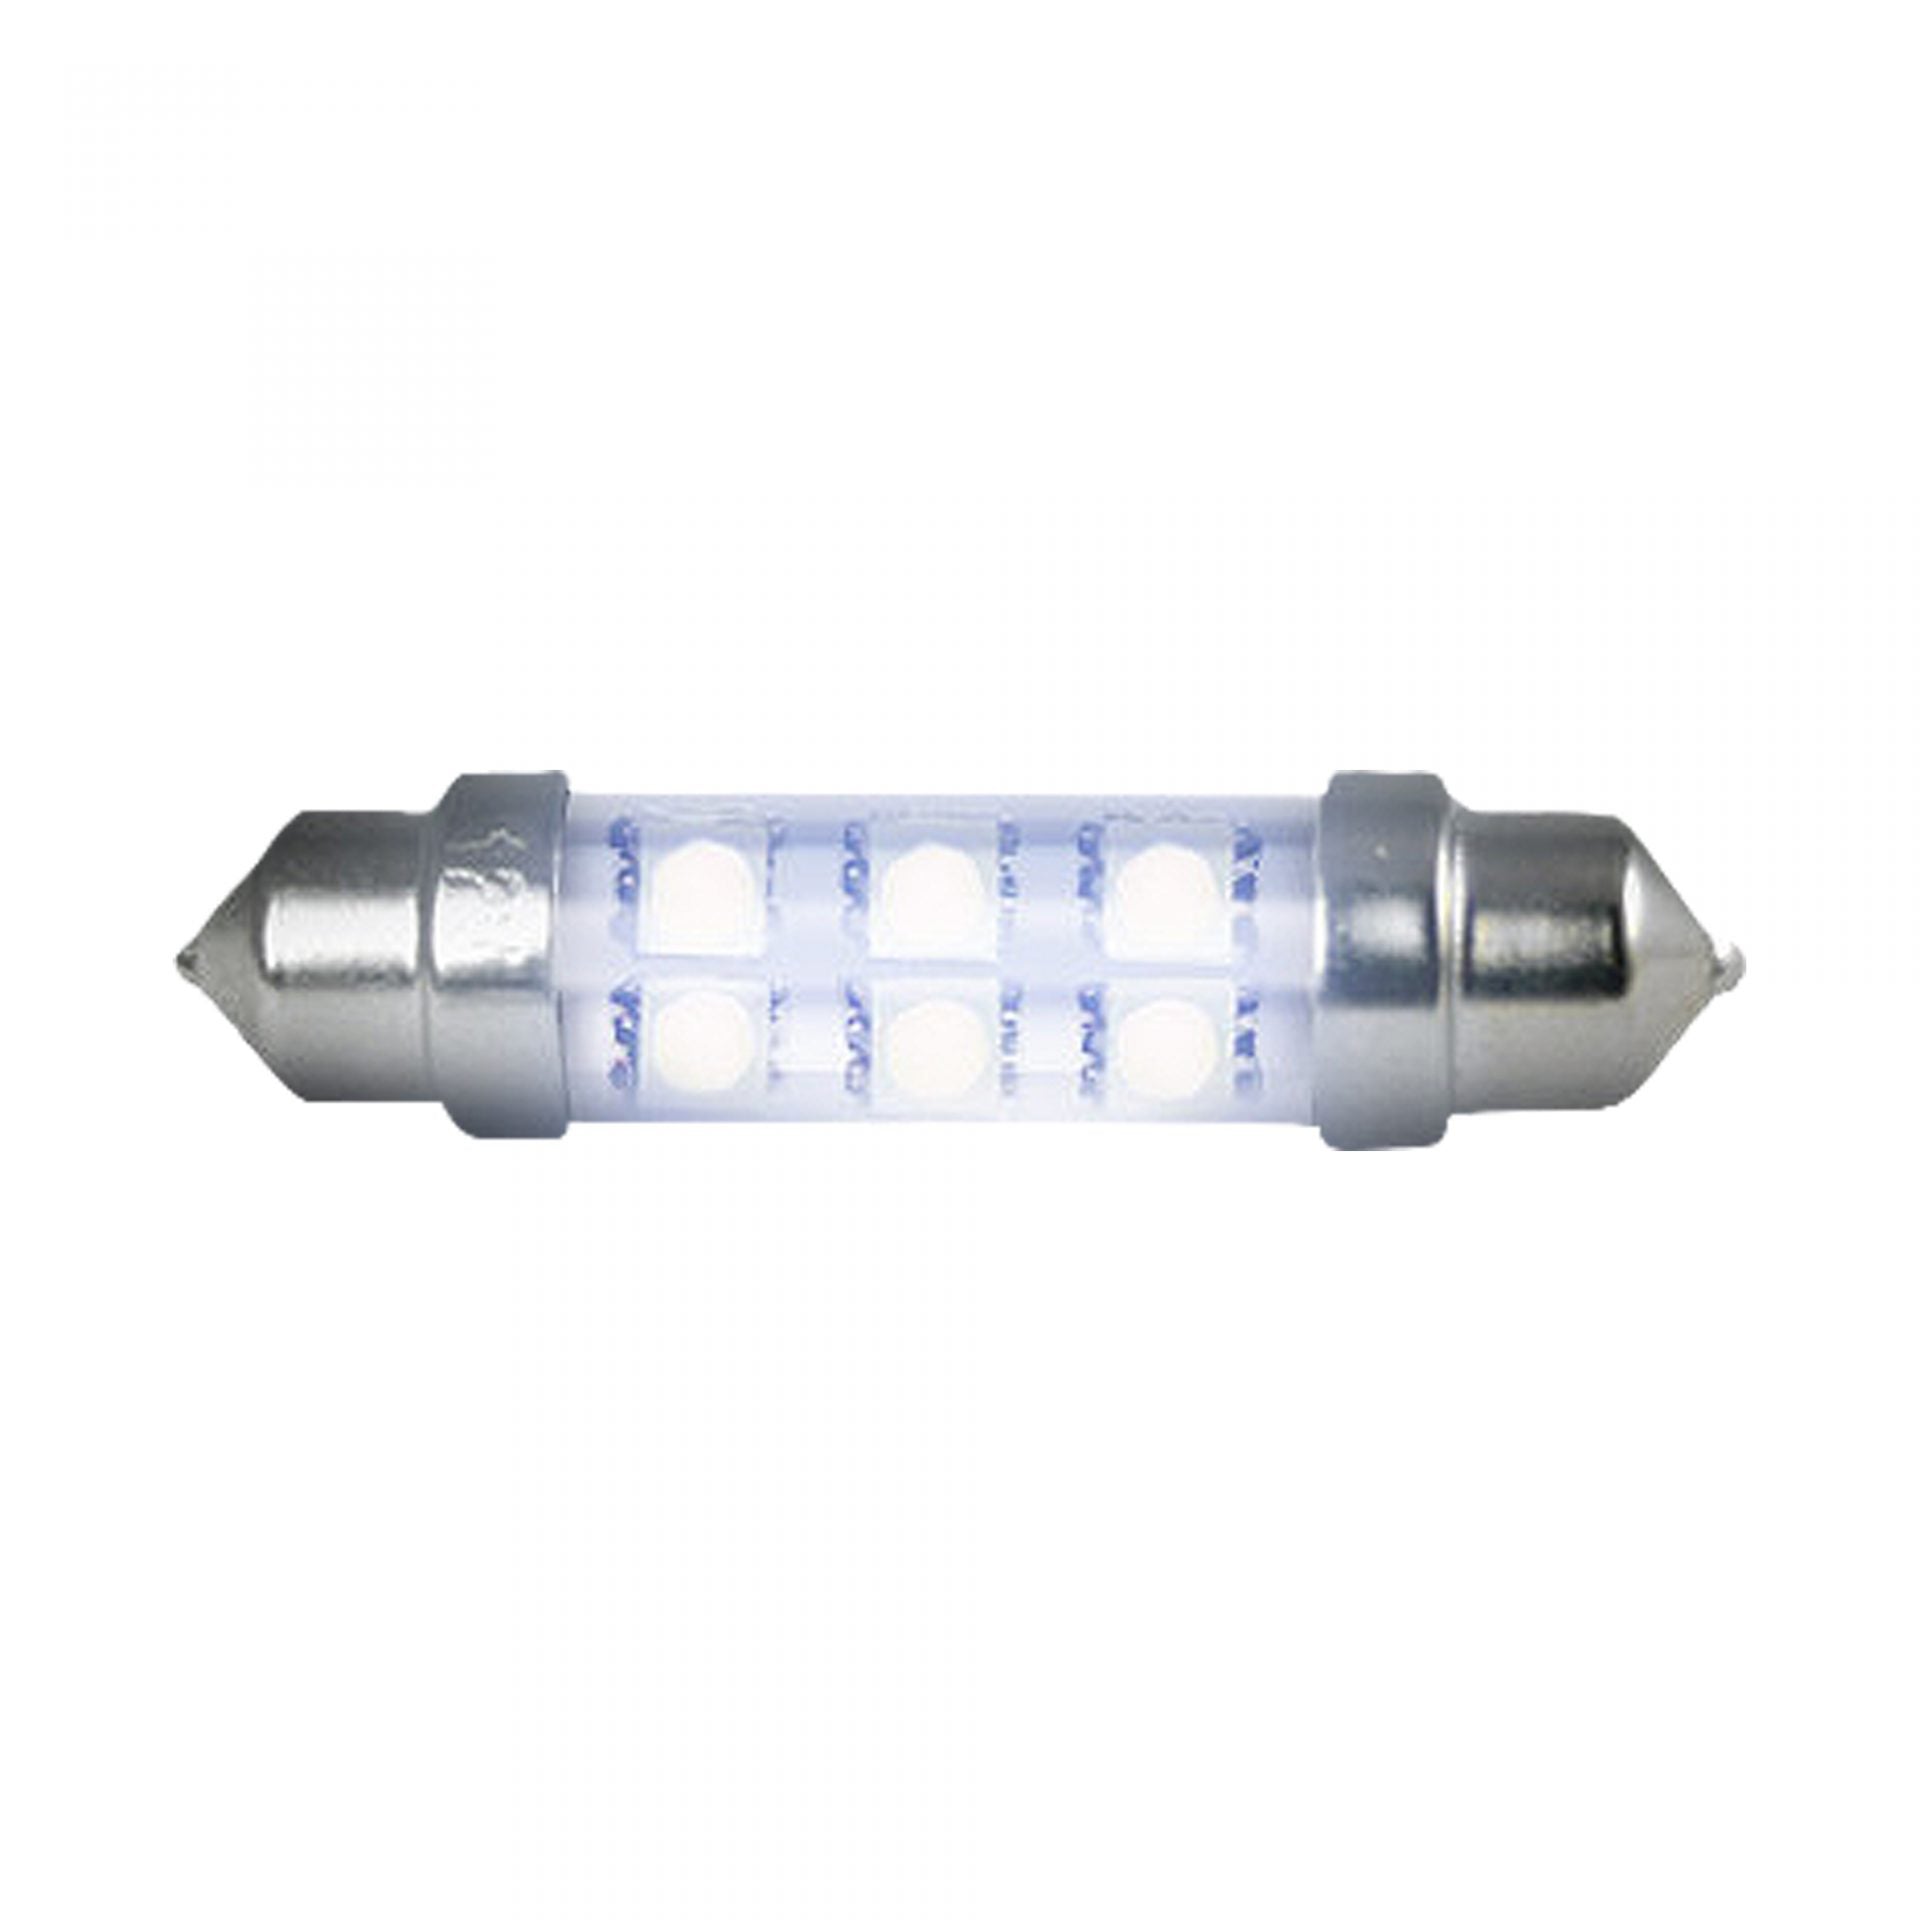 578 (6 LED’s) High-Power 1-Watt WHITE LED Dome Map Light Bulb